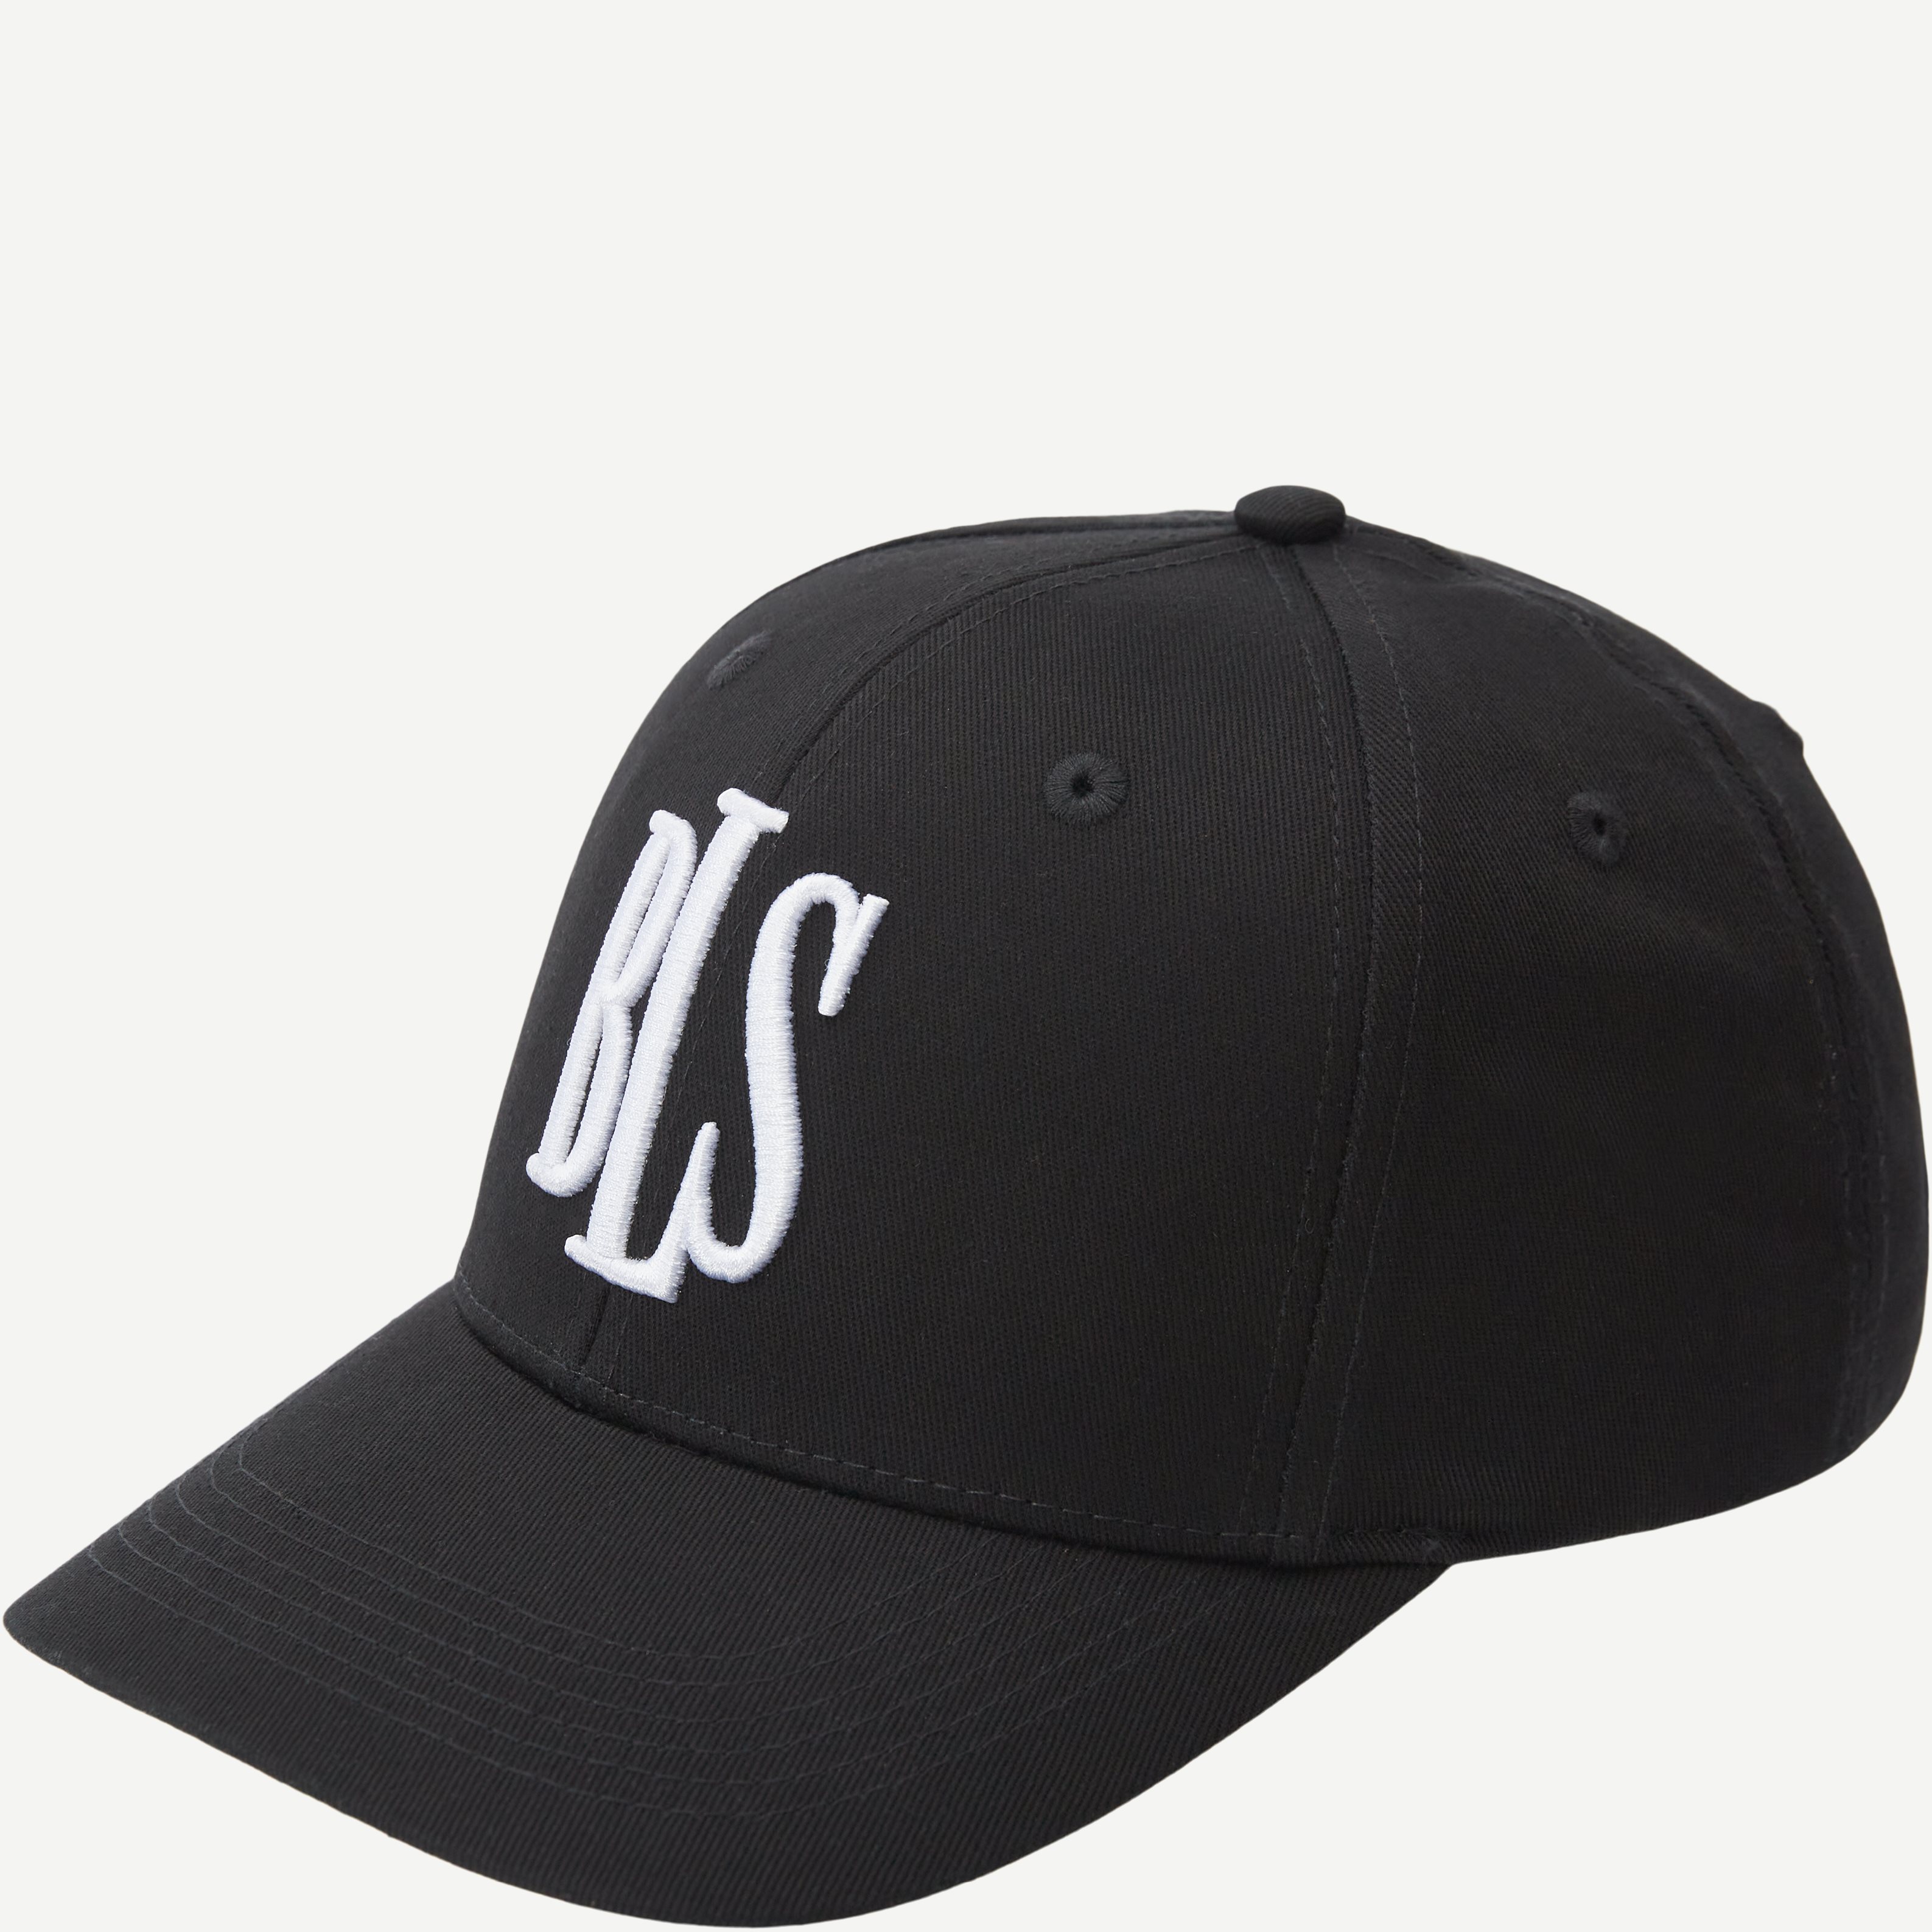 BLS Caps CLASSIC BASEBALL CAP BLACK 99101 Black